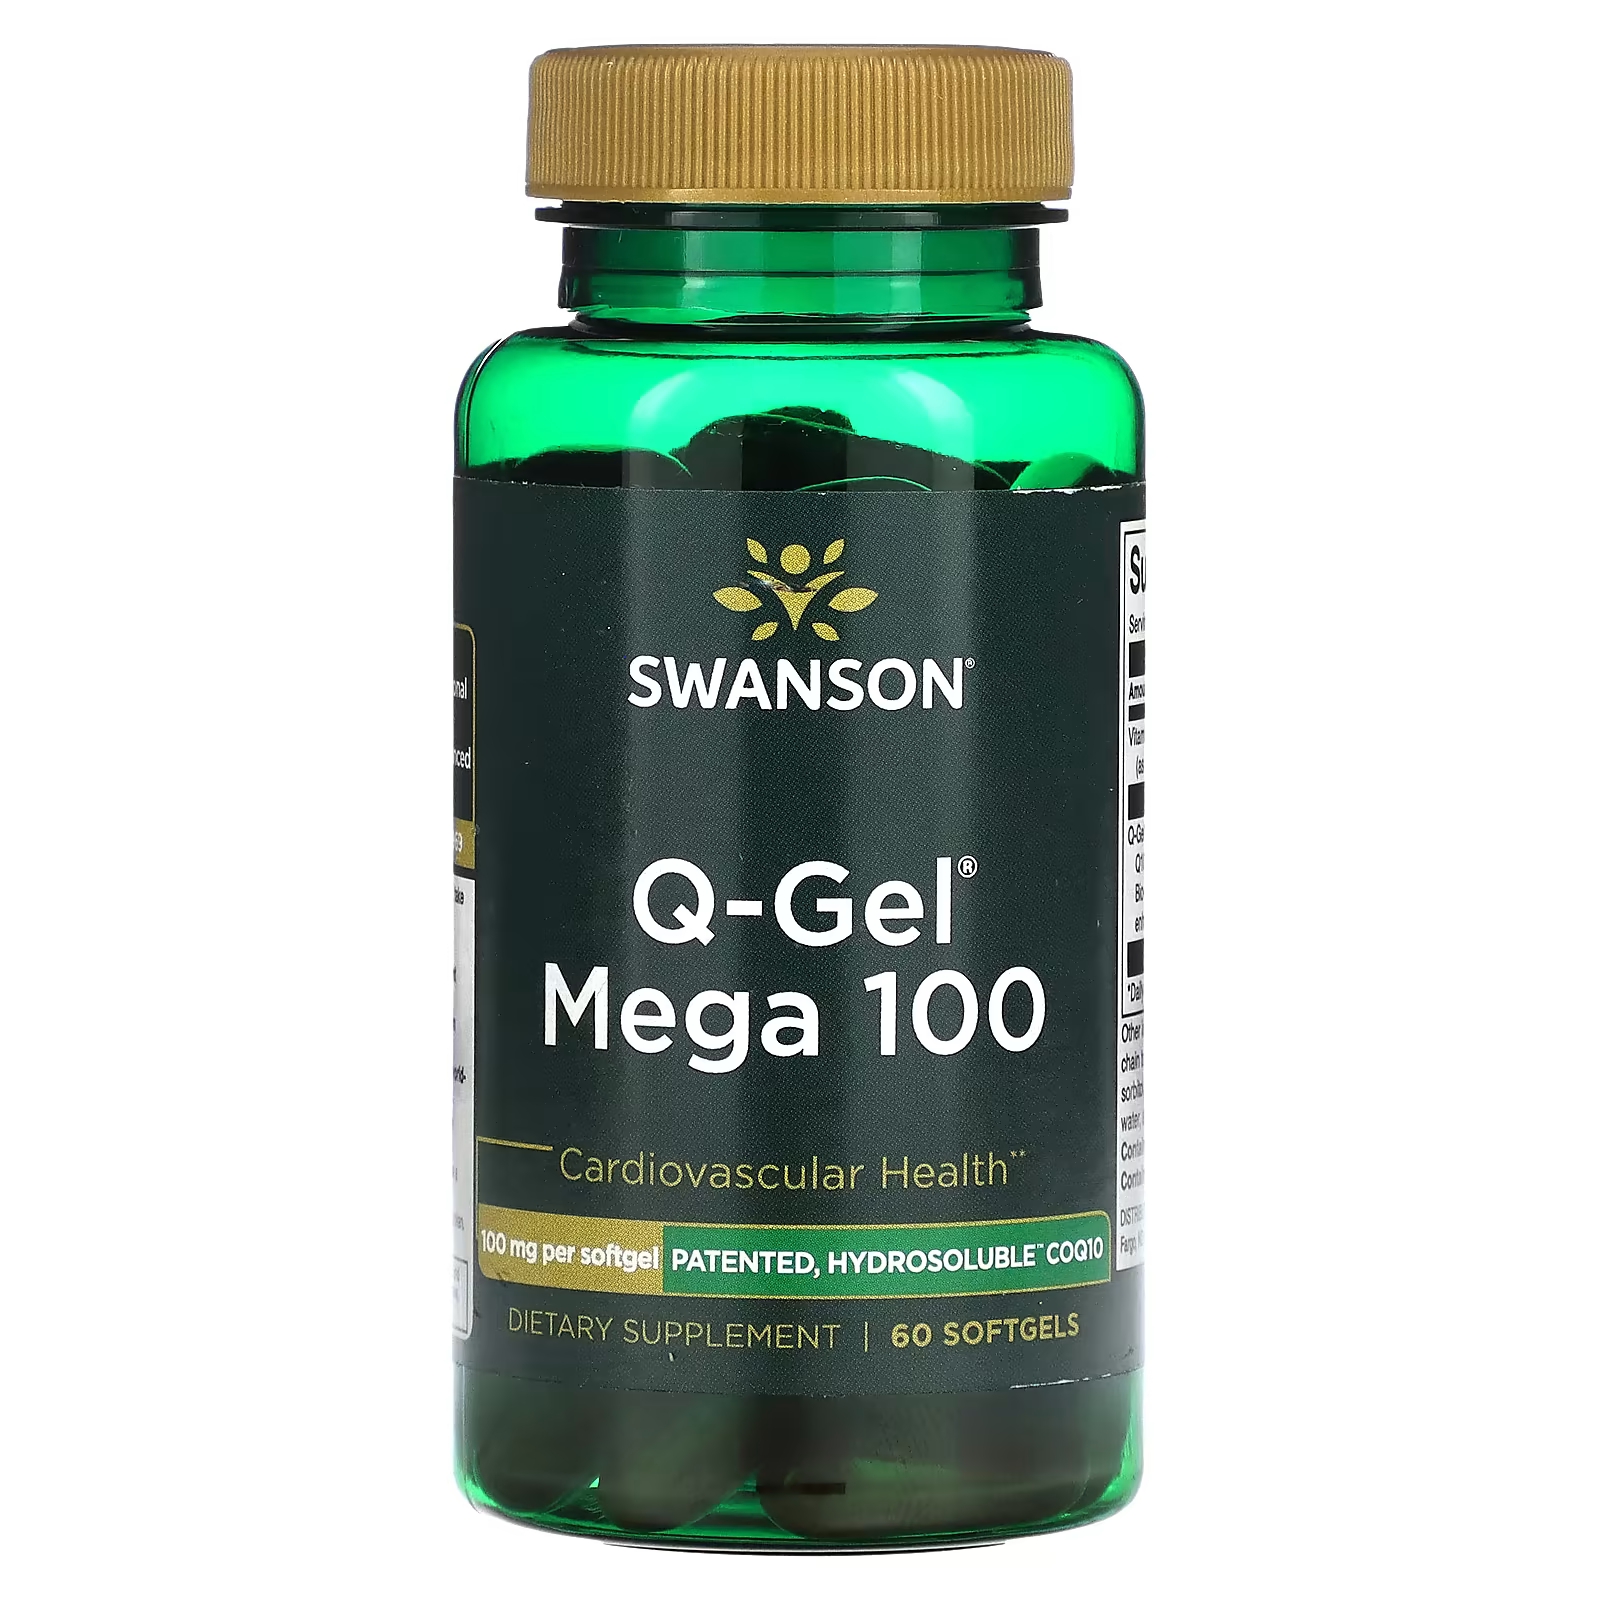 Пищевая добавка Swanson Q-Gel Mega 100 мг, 60 мягких таблеток пищевая добавка swanson triple strength super epa и dha 900 мг 60 мягких таблеток